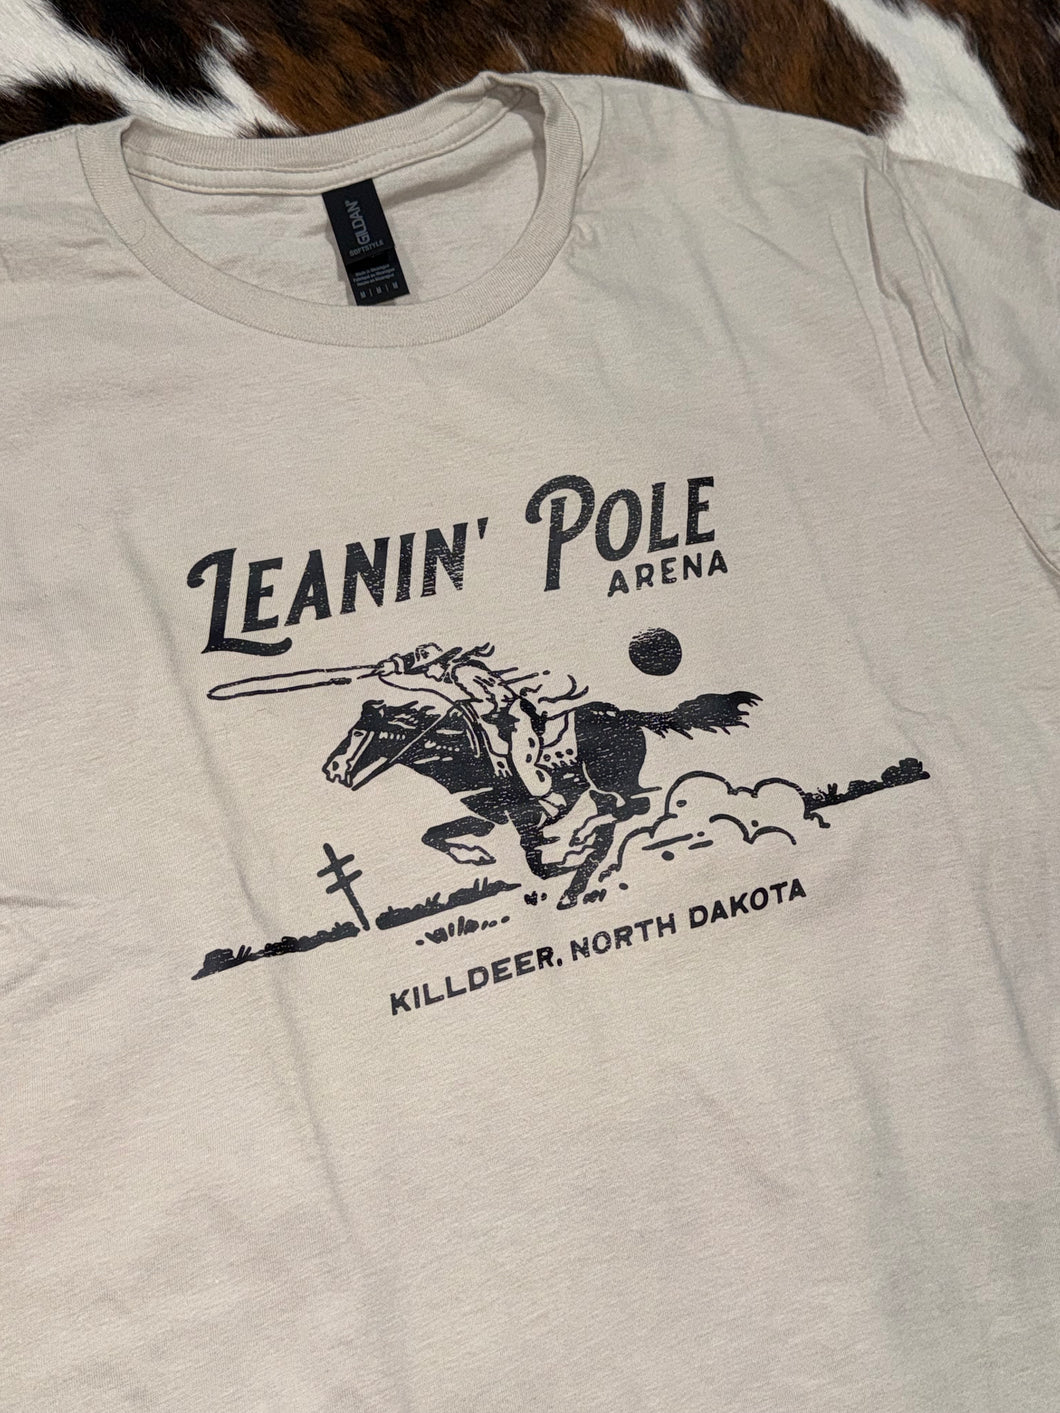 Leanin' Pole Arena Dashin' Roper Logo T-Shirt